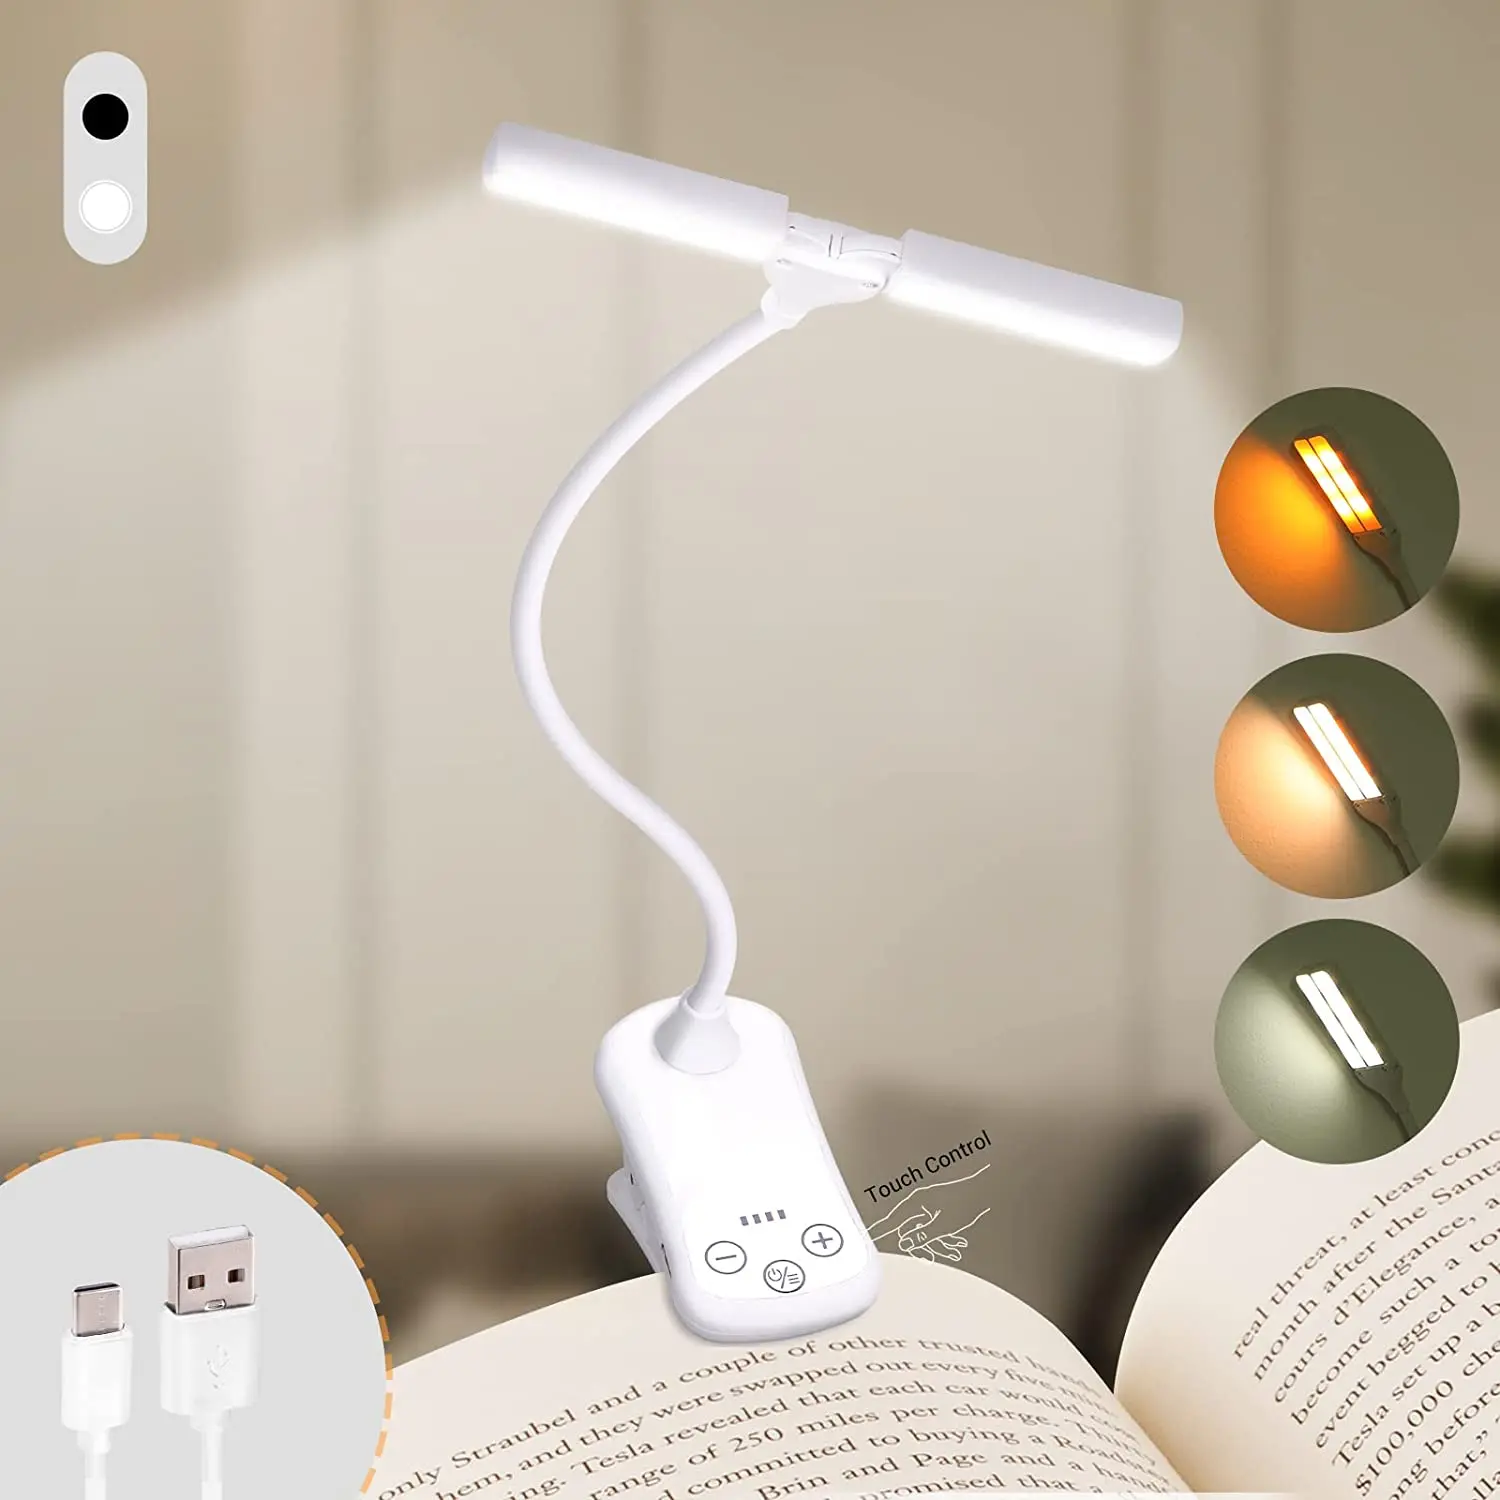 Lampe de lecture, 14 LED à commande tactile avec 3 couleurs et 8  luminosité, lampe de livre rechargeable, lampe de lecture portable pour  livres